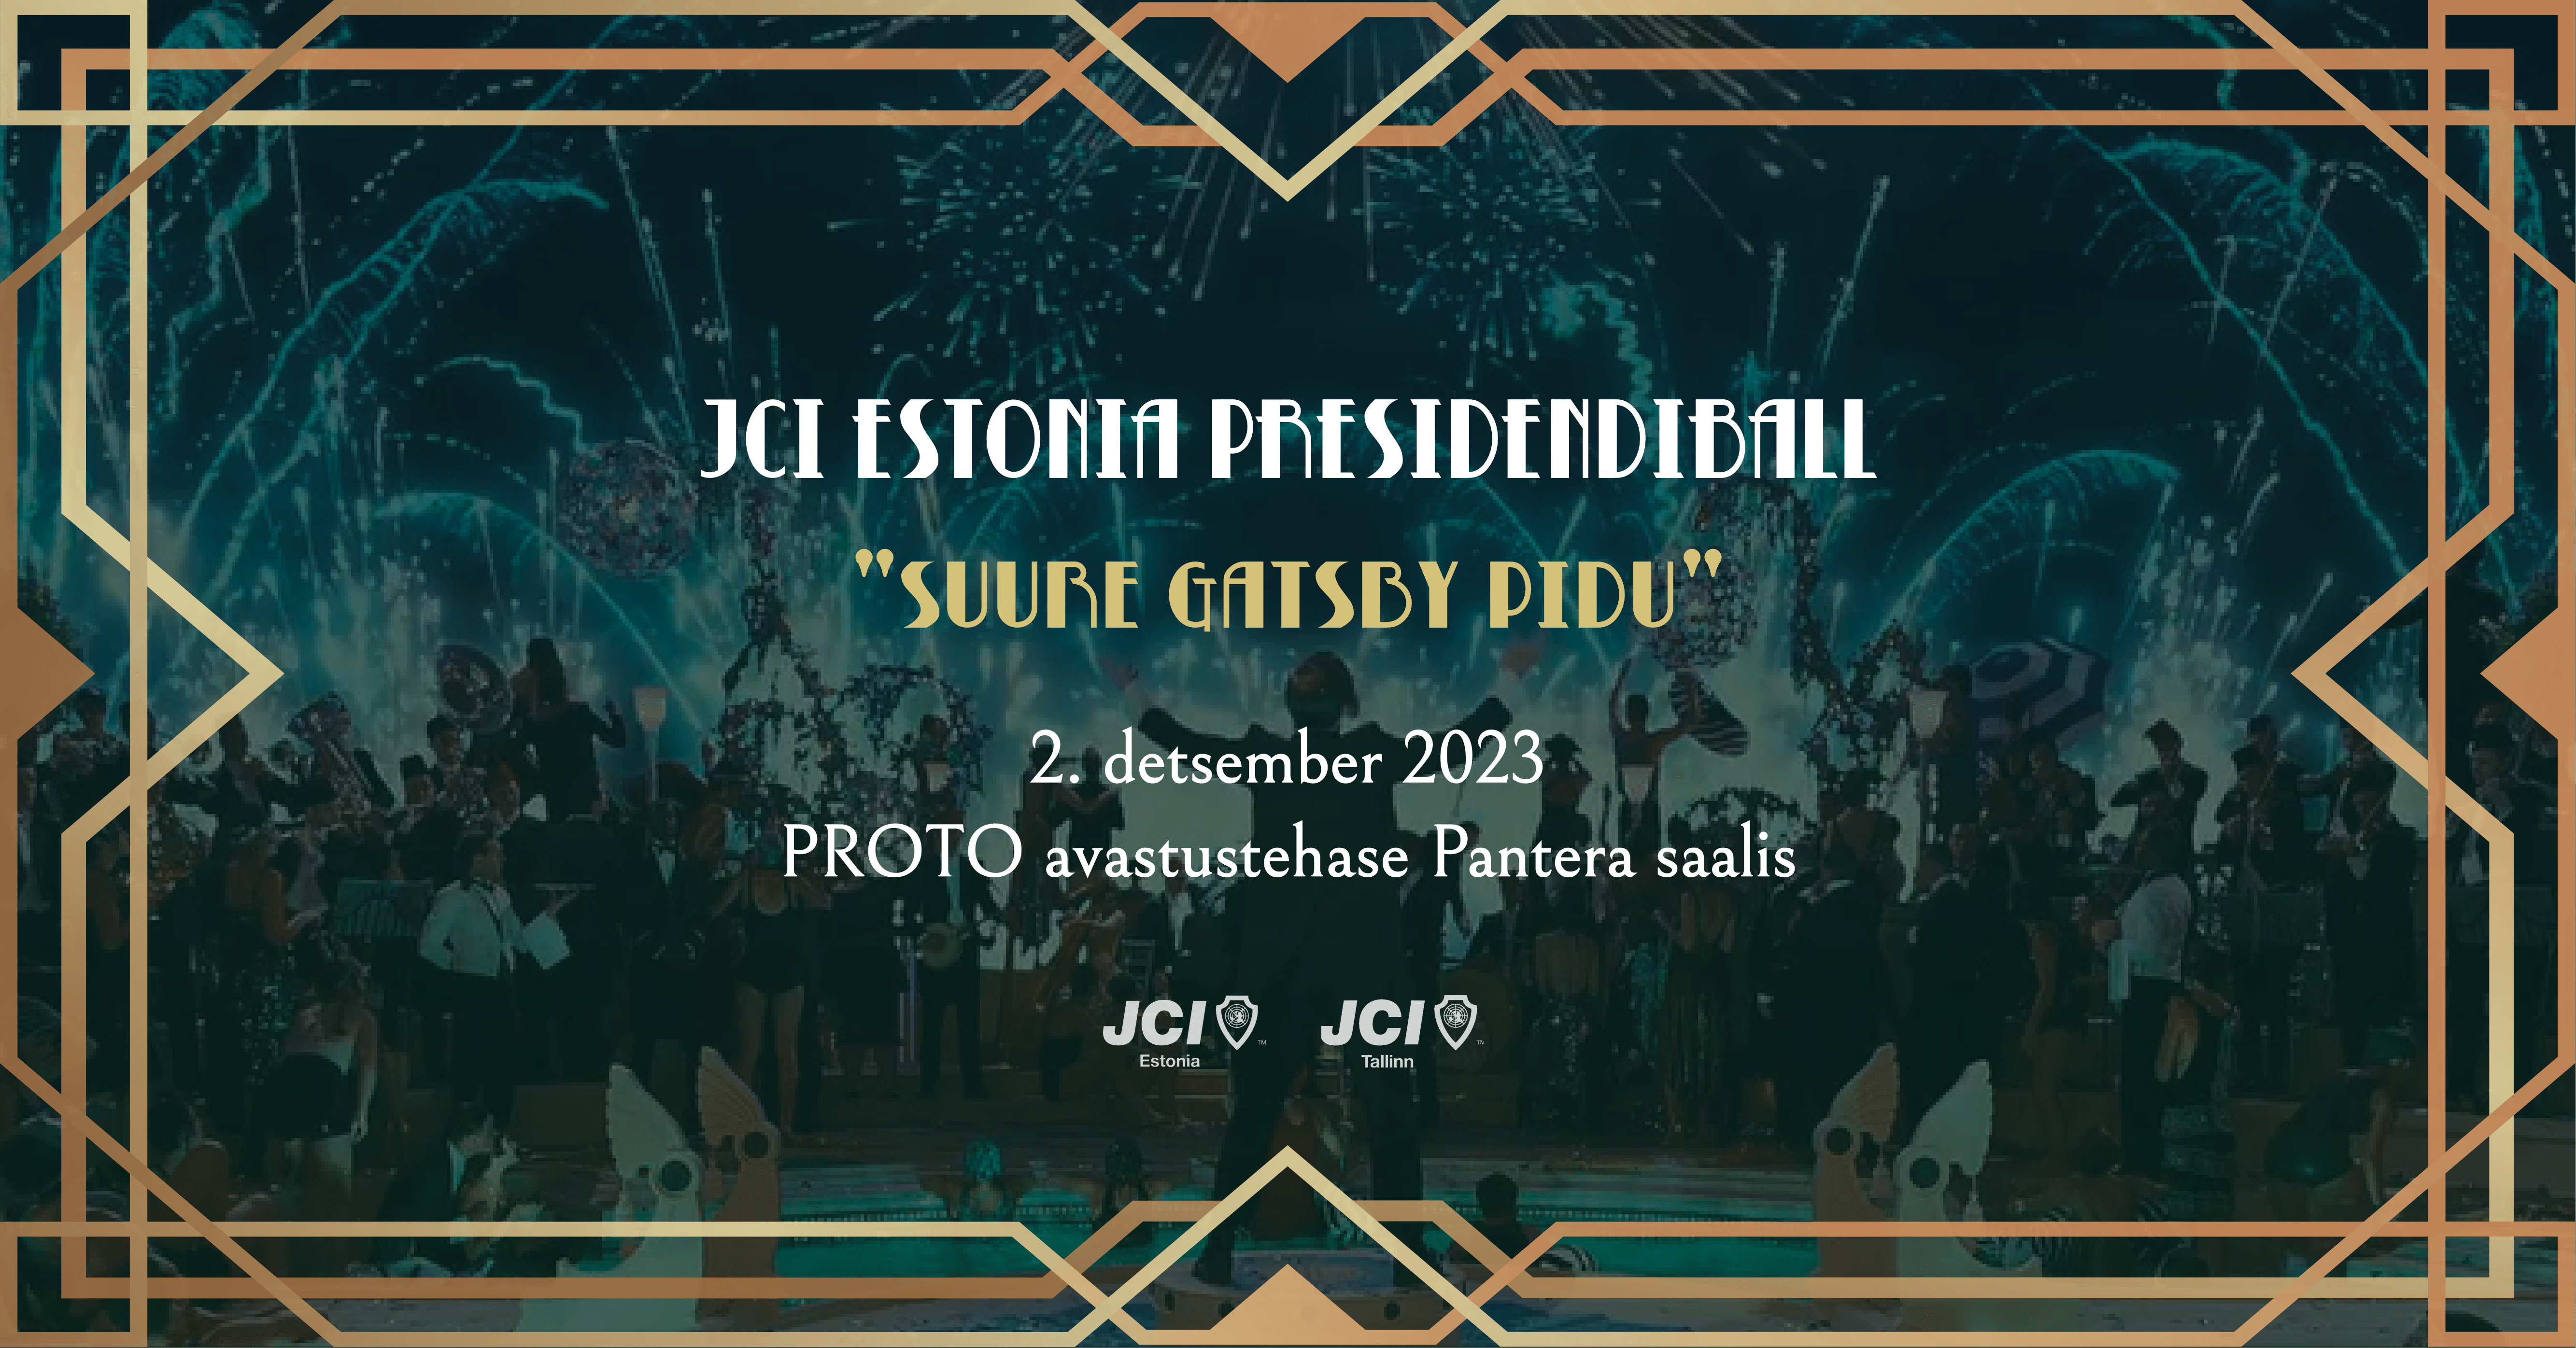 JCI Estonia Presidendiball Facebooki üritus